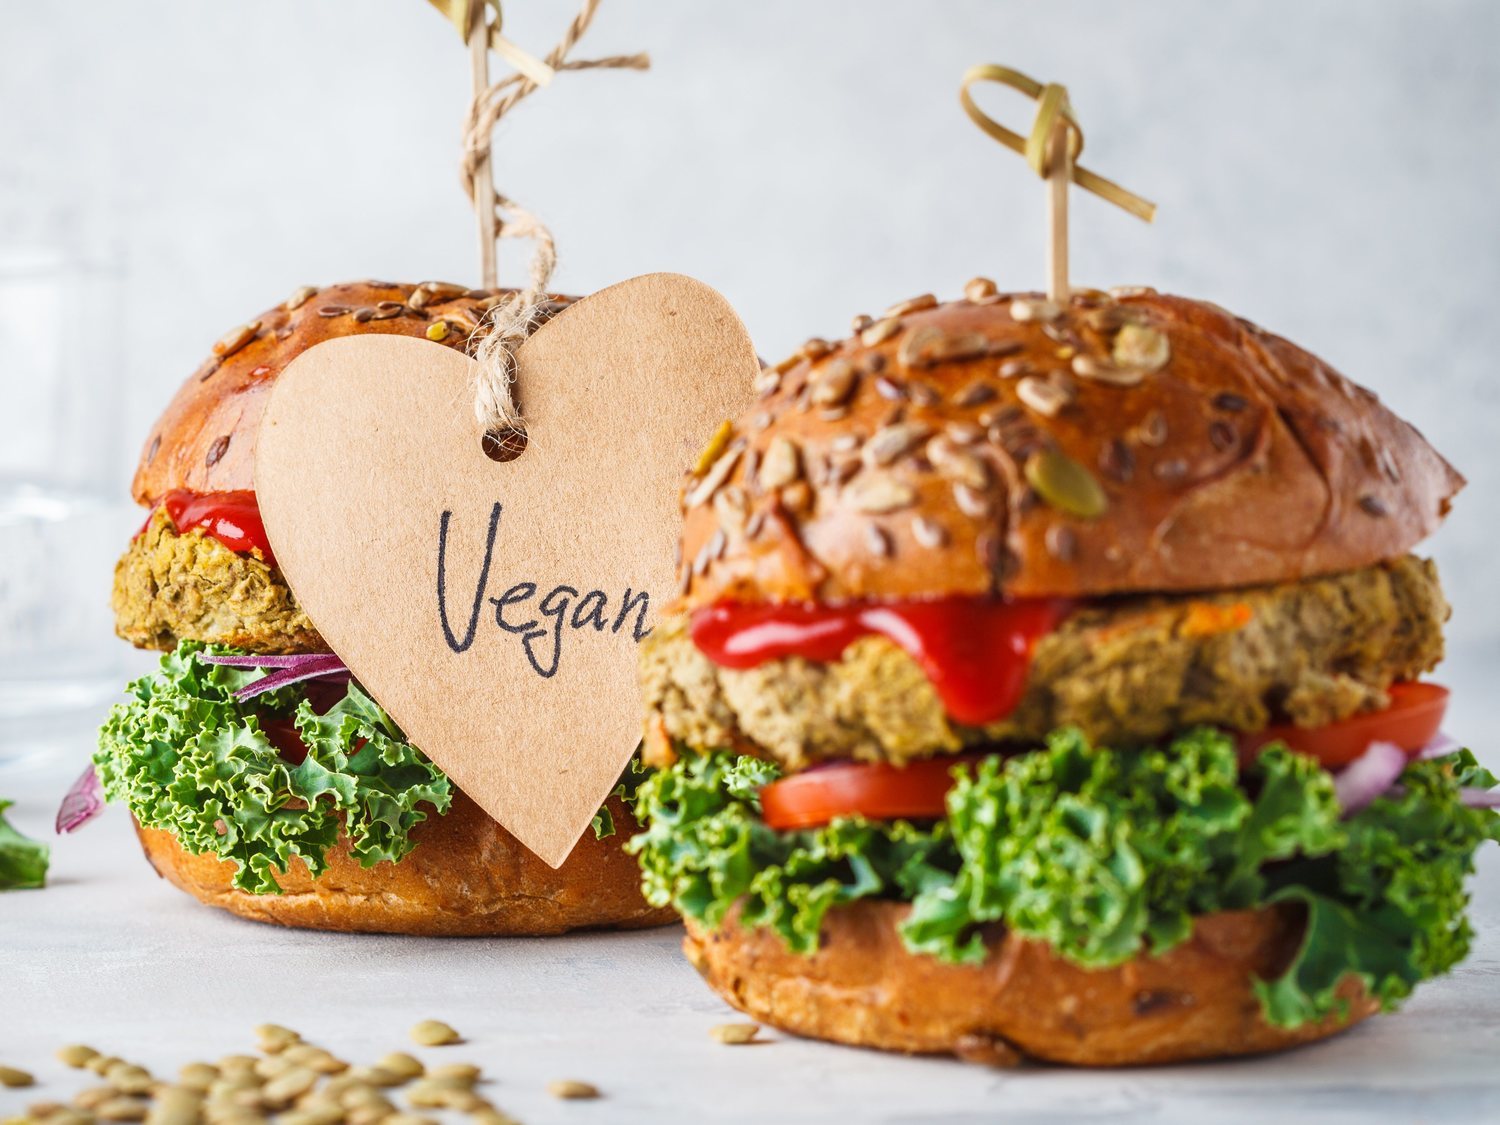 Las 8 mejores hamburguesas veganas del supermercado, según la OCU